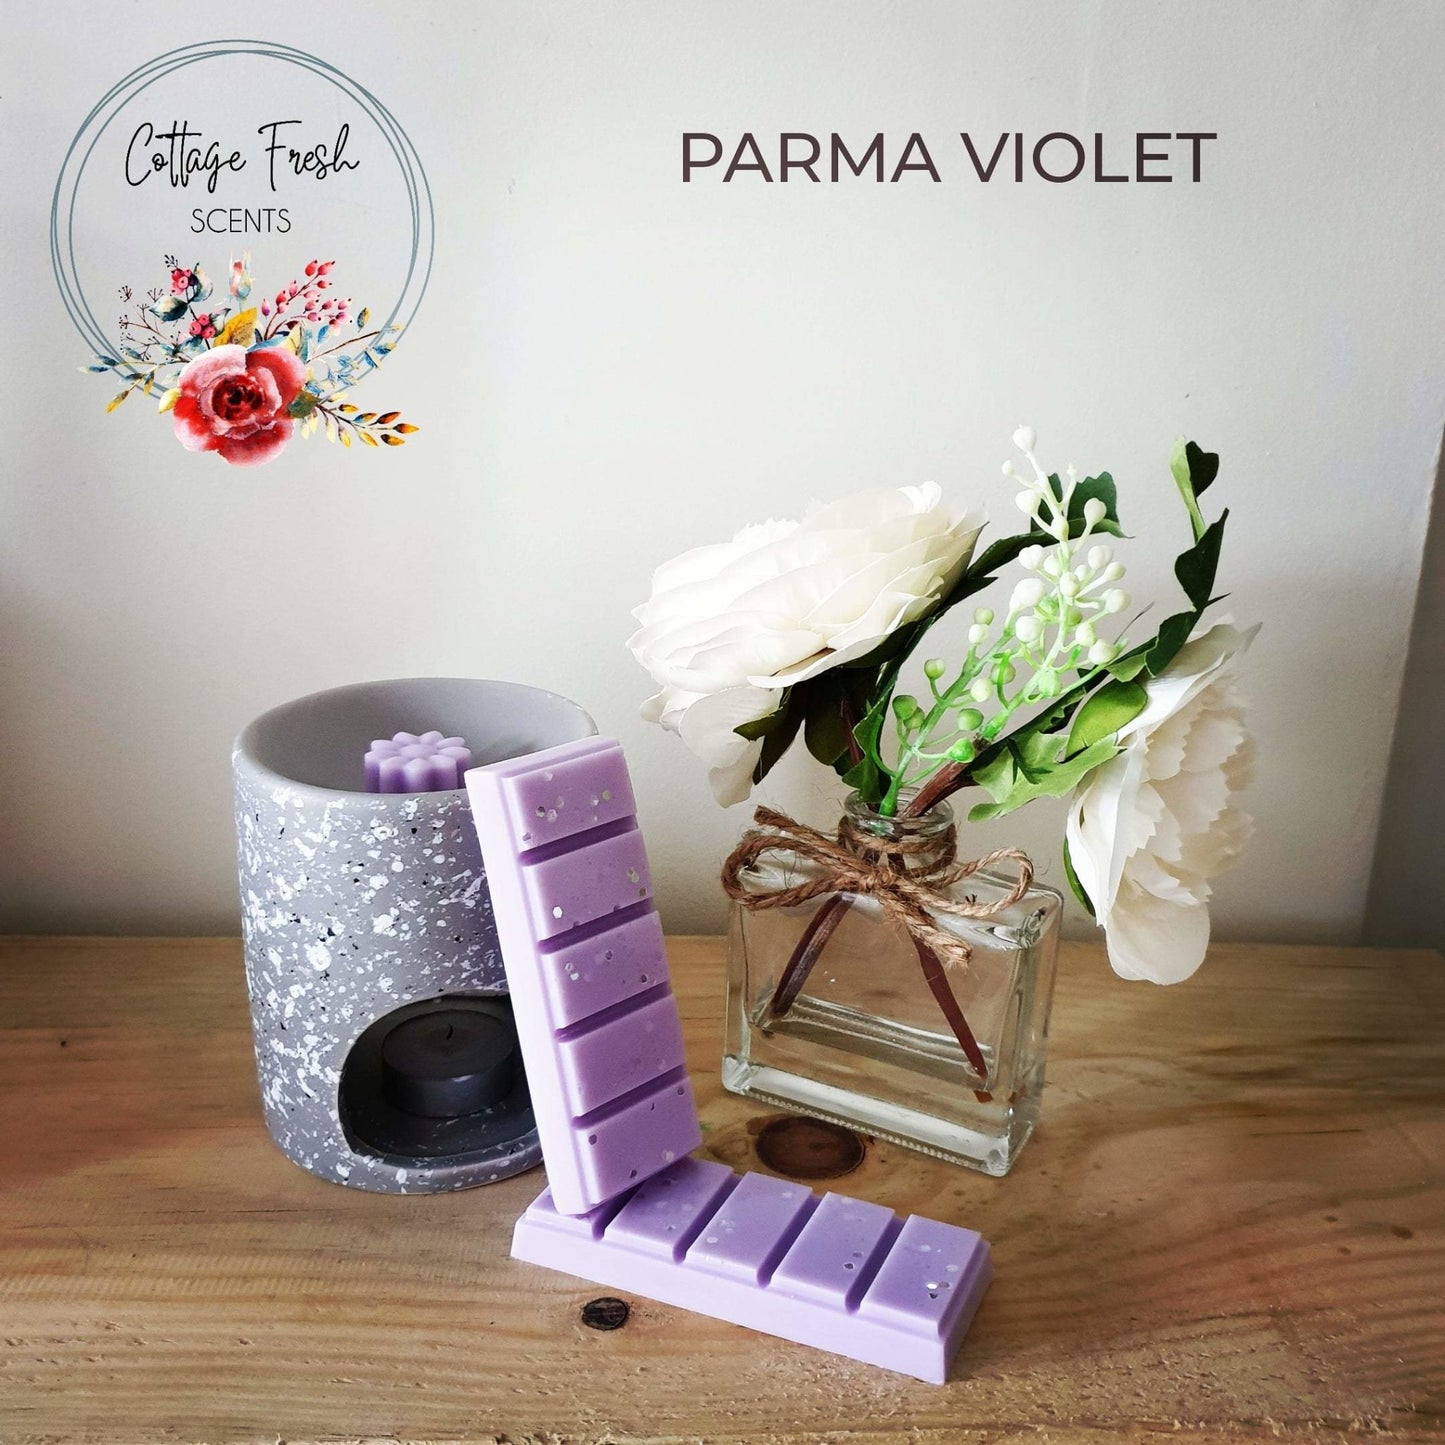 Parma Violet Wax Melt - Cottage Fresh Scents